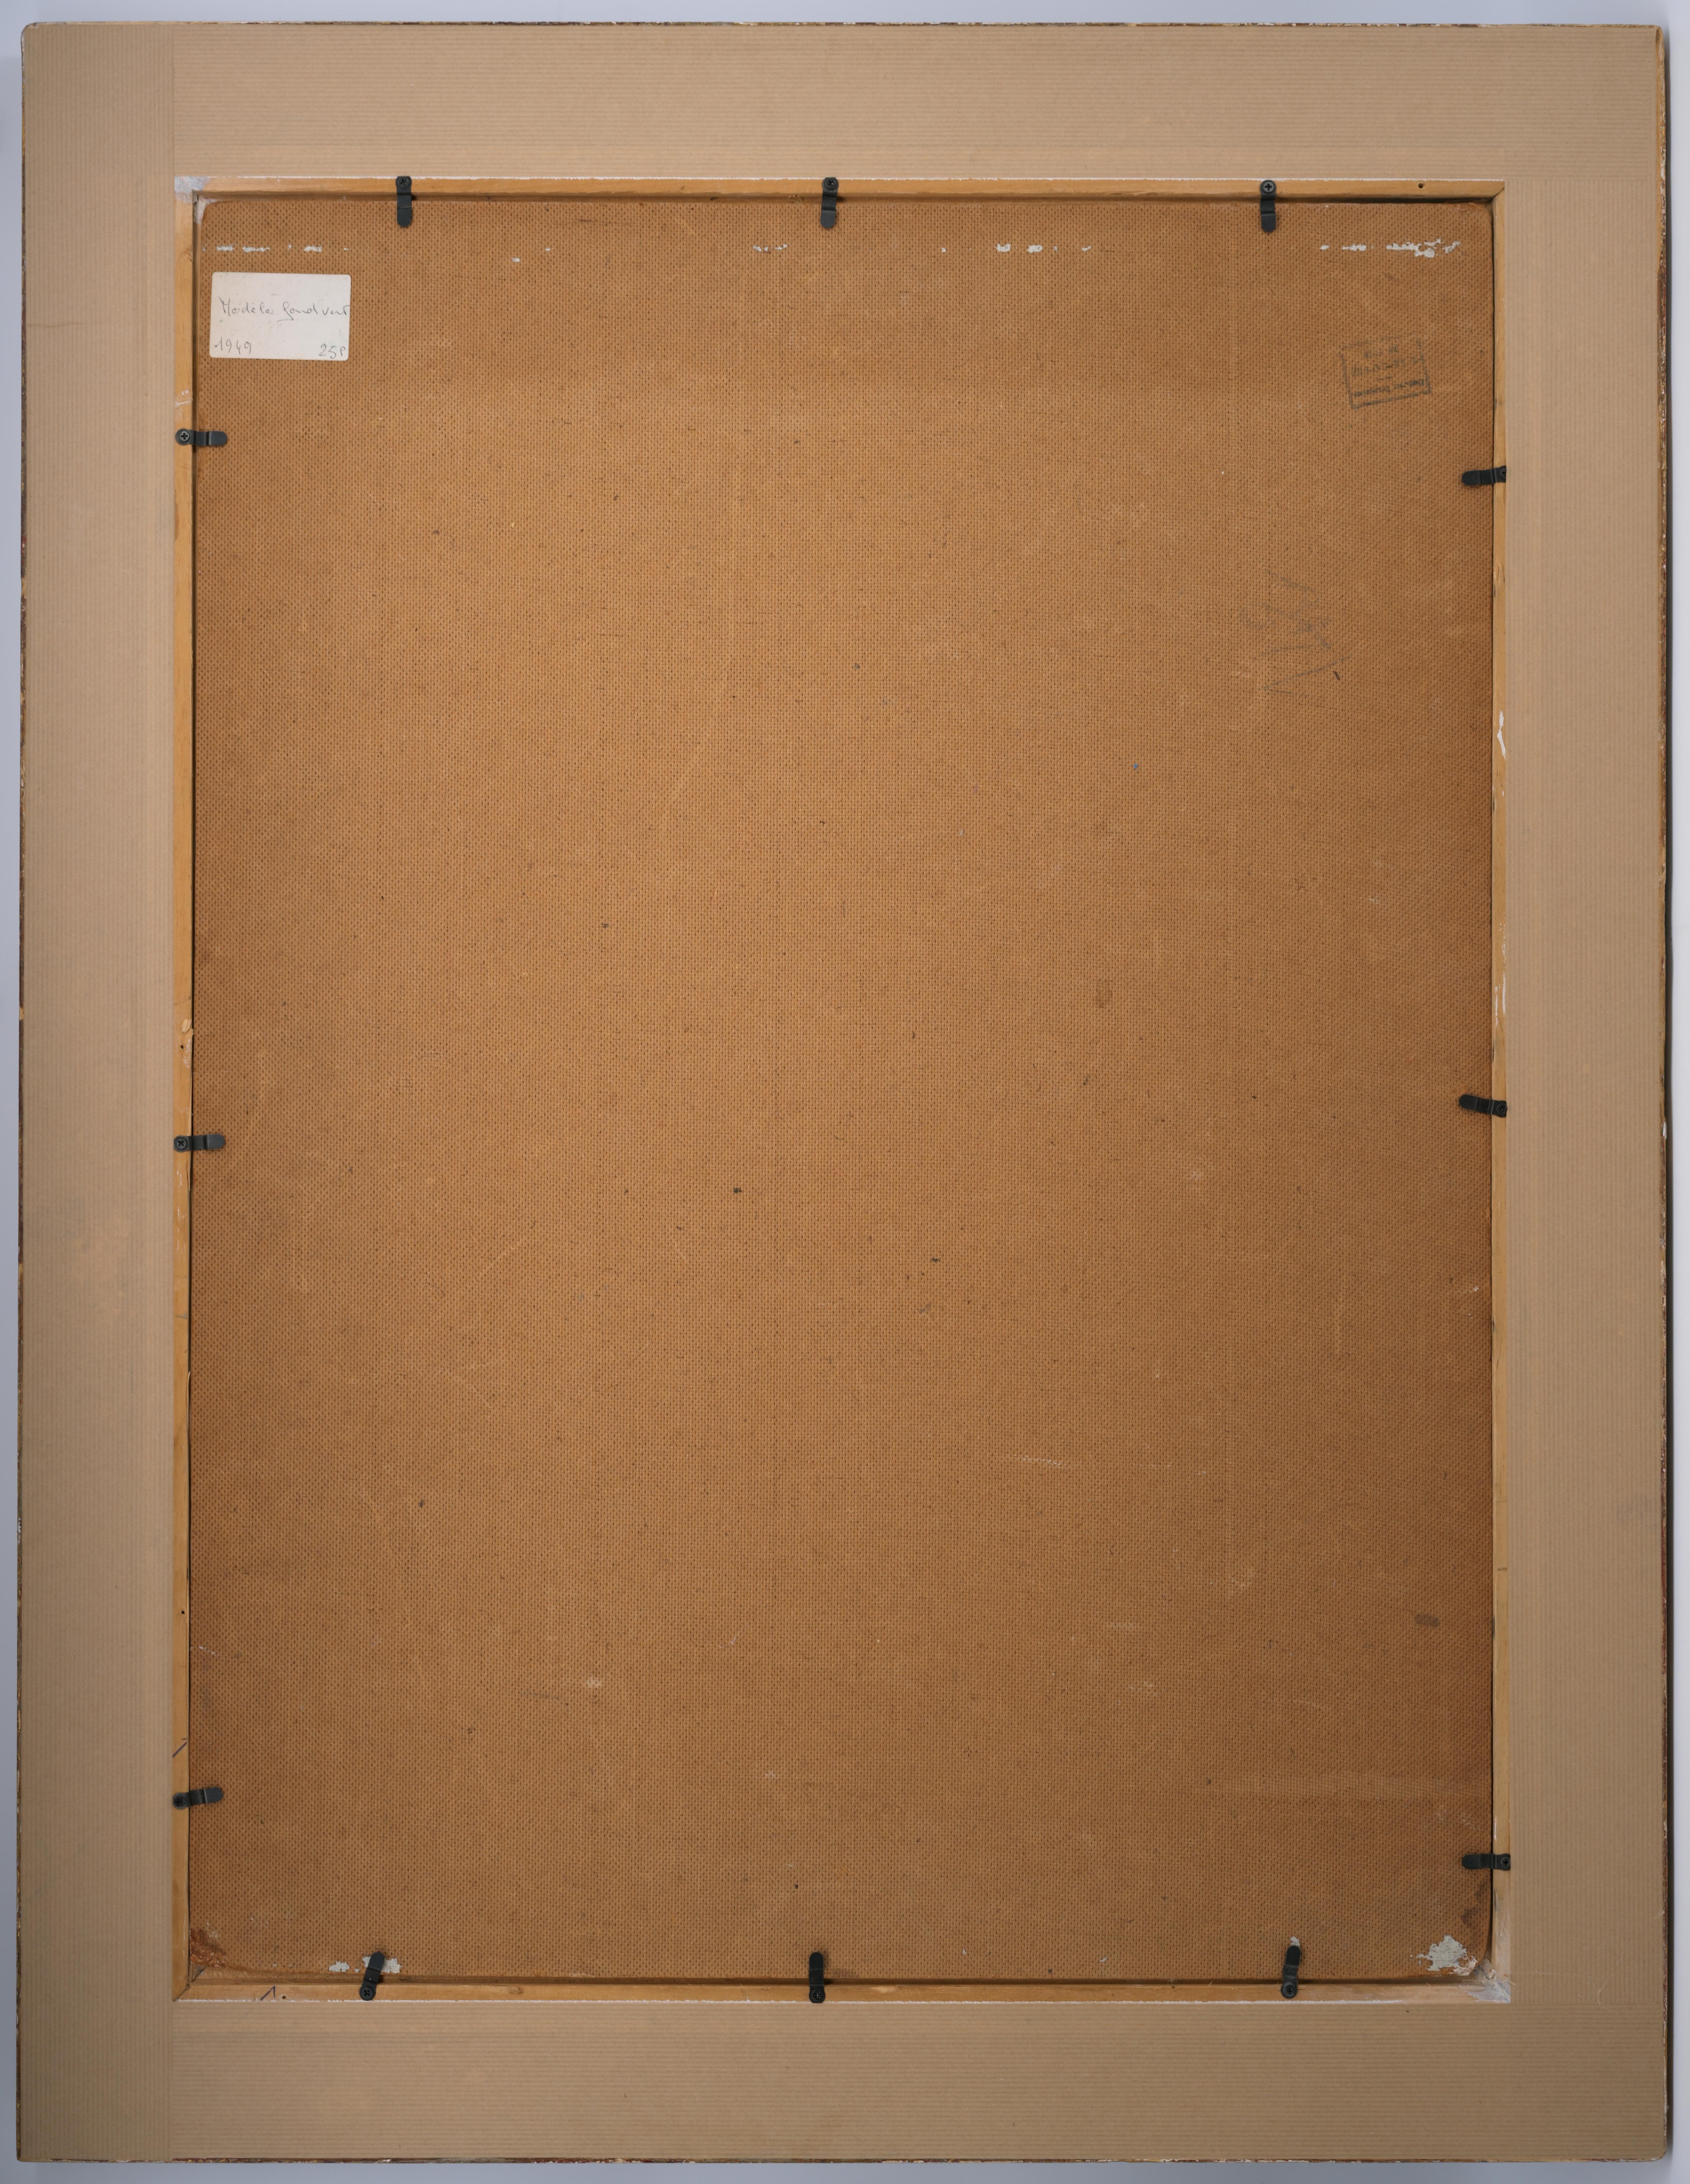 Öl auf Isorelplatte von Charles PICART LE DOUX (1881-1959), Frankreich, 1949. Modell auf grünem Hintergrund. Mit Rahmen: 97.5x76.5 cm - 38.4x30.1 inches ; ohne Rahmen: 81x60cm - 31.9x23.6 inches. Format 25P. Signiert und datiert 